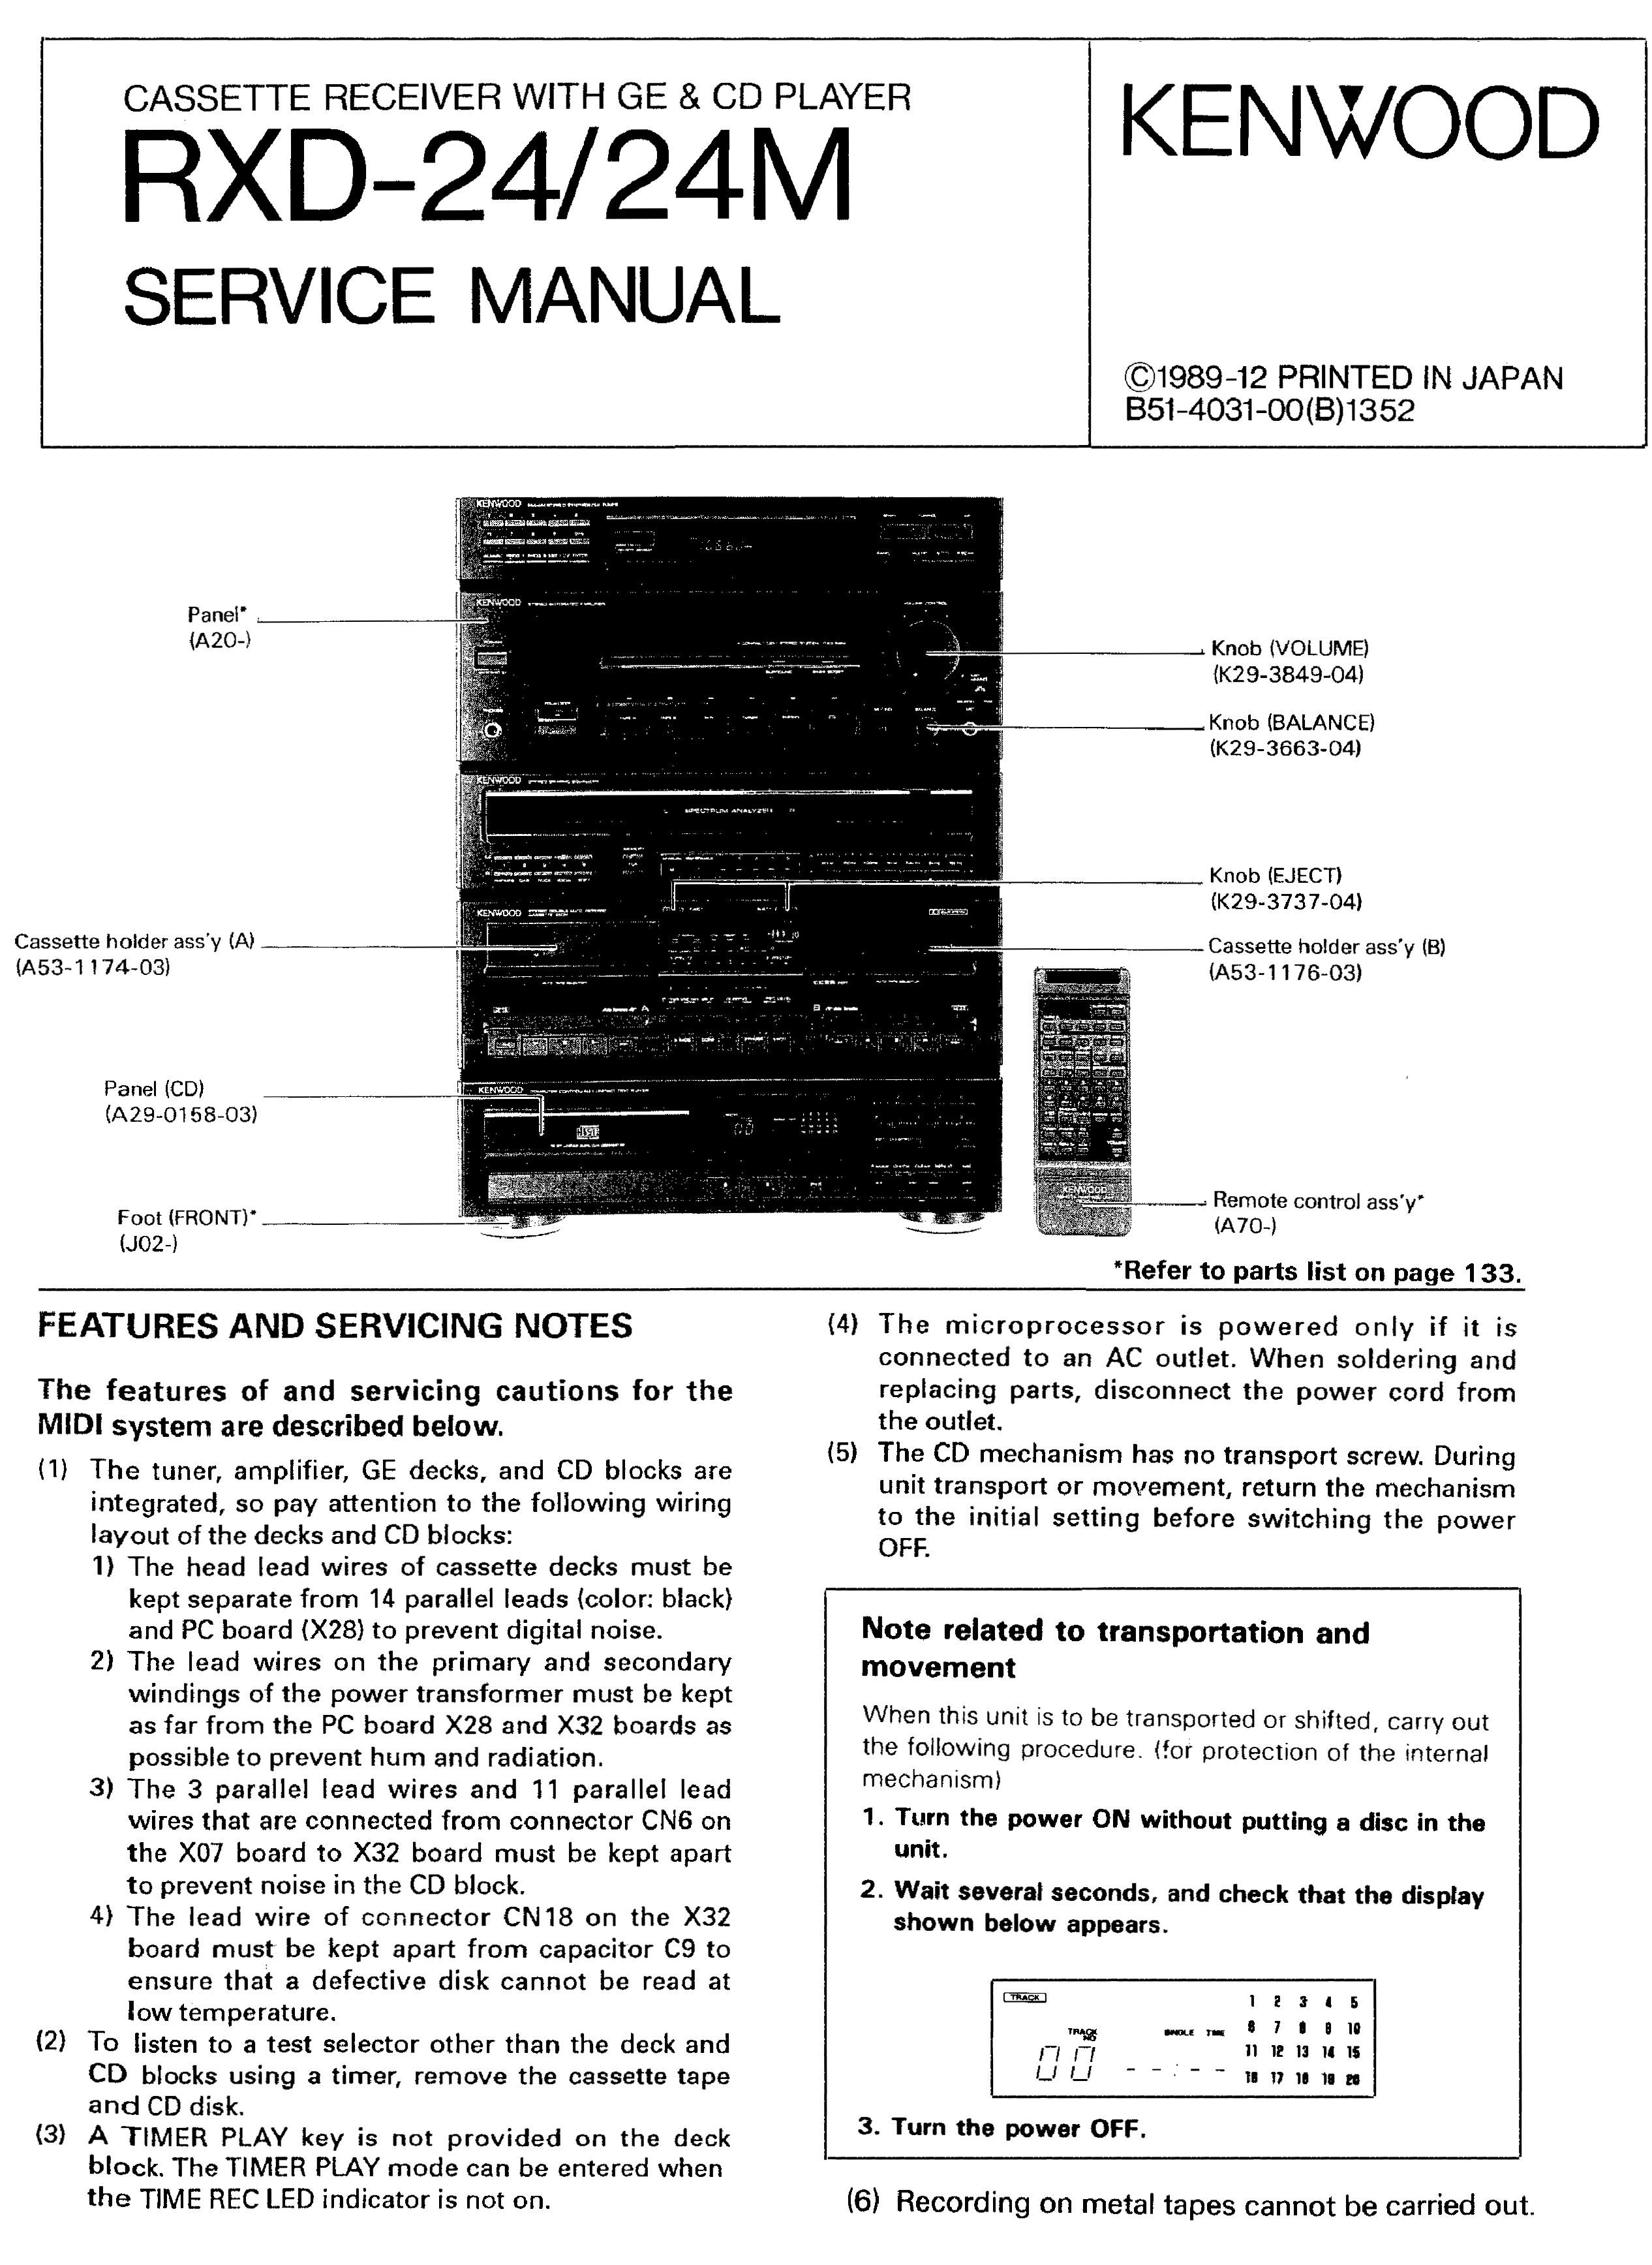 Kenwood M-24-Manual-1990.jpg